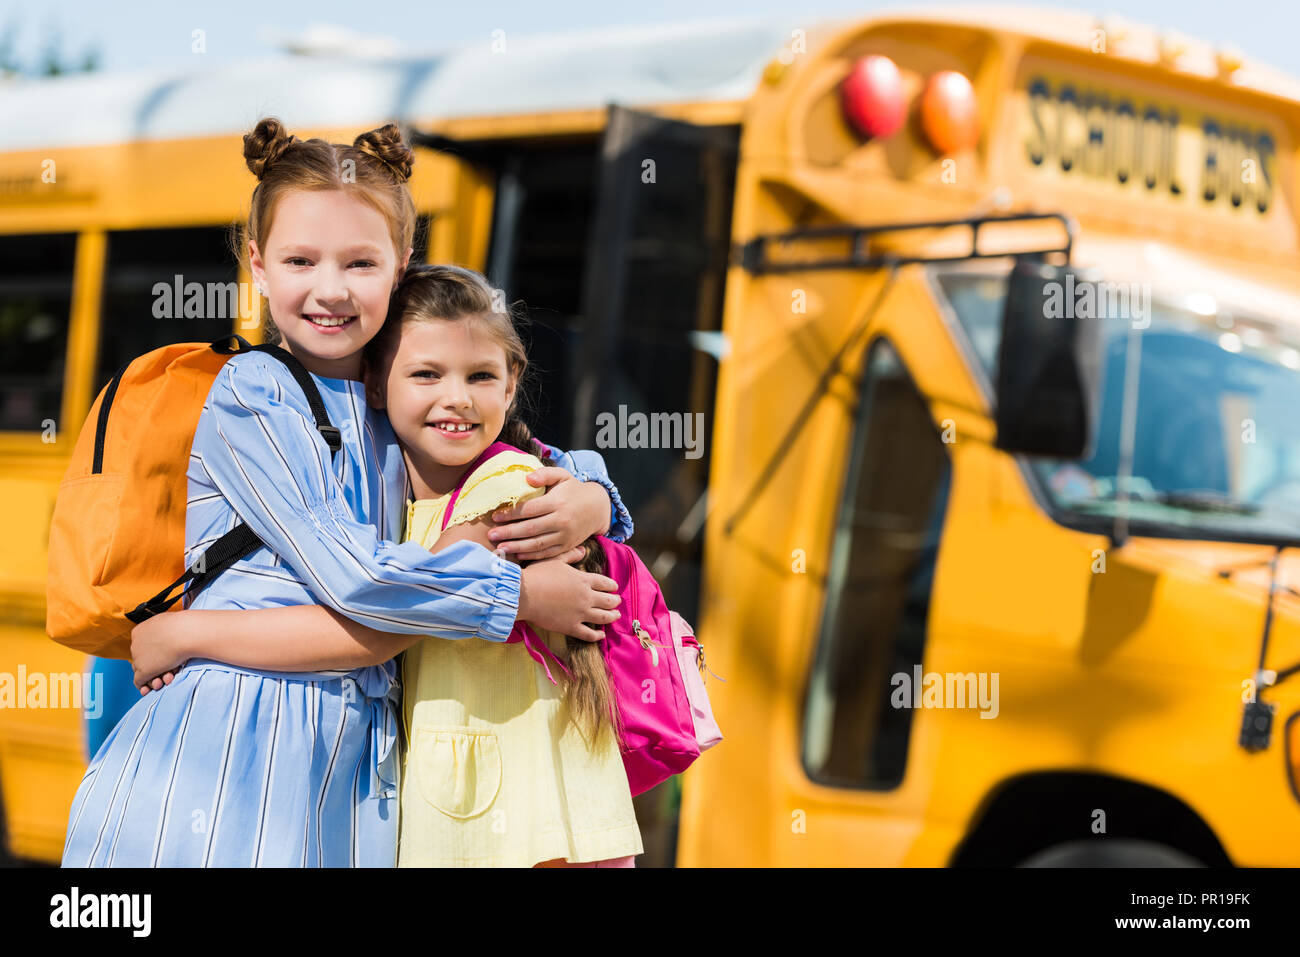 Schoolgirls Bus